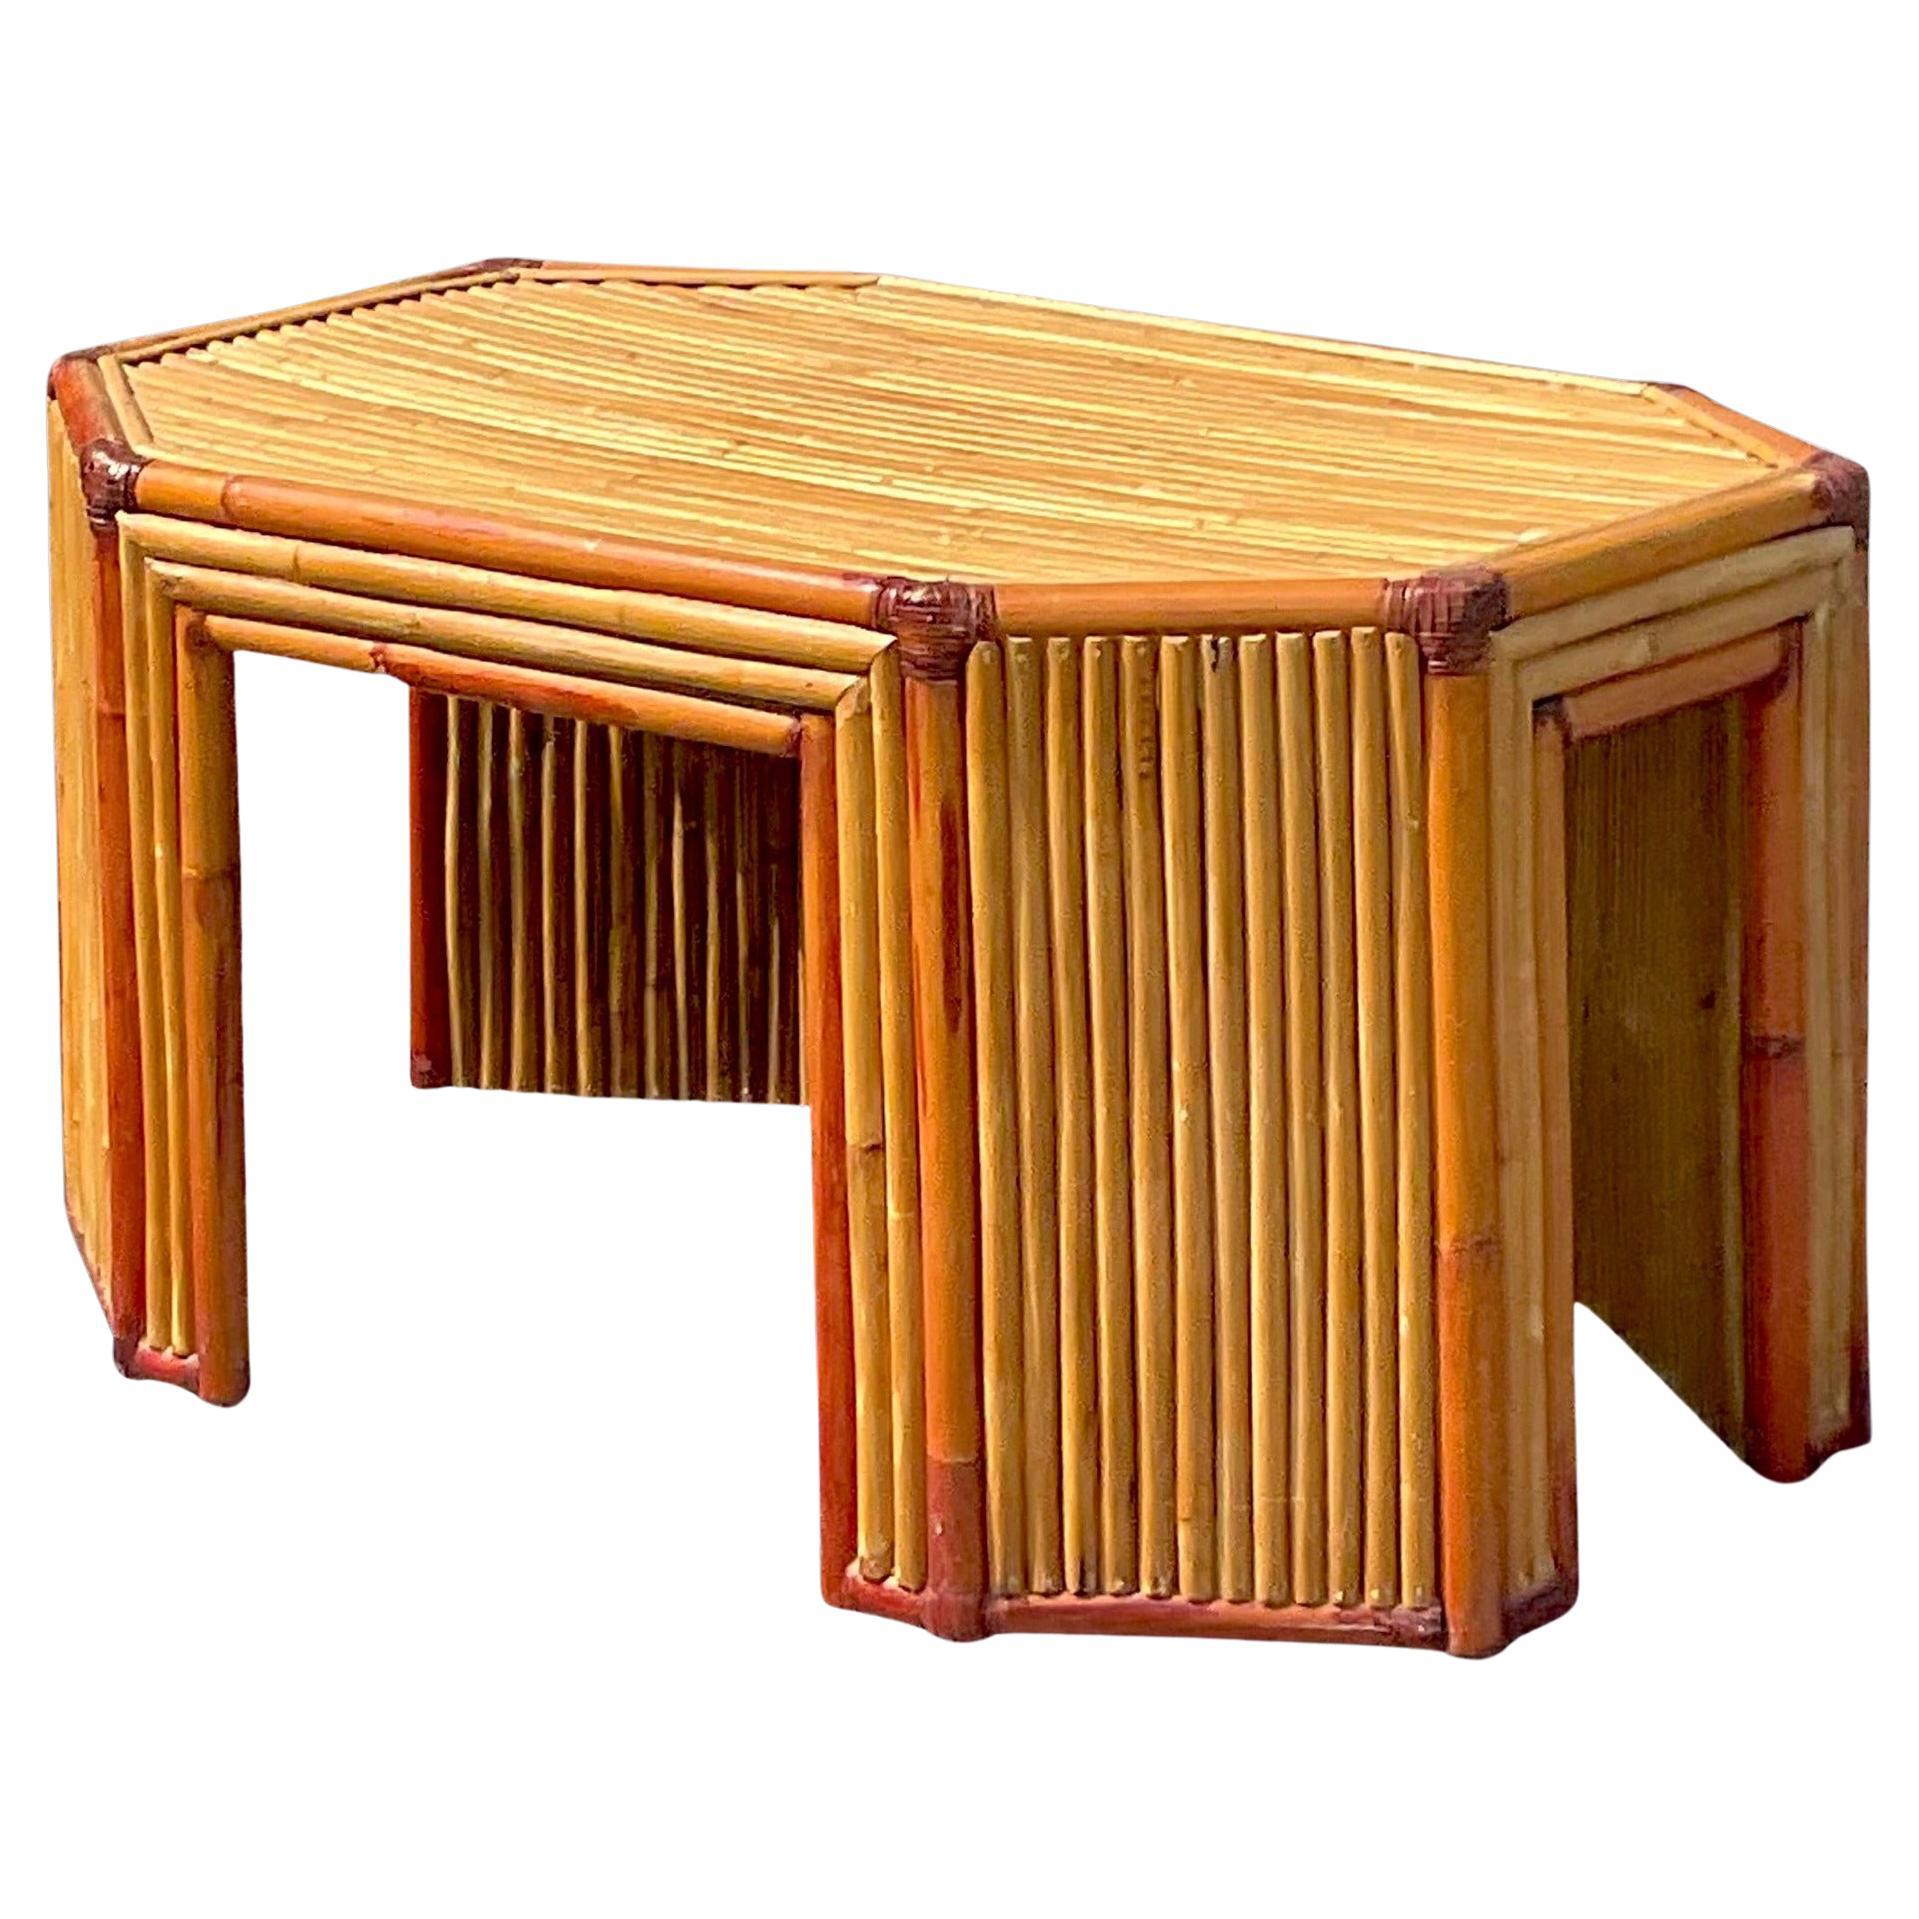 Table basse en rotin octogonale de style côtier de la fin du 20e siècle